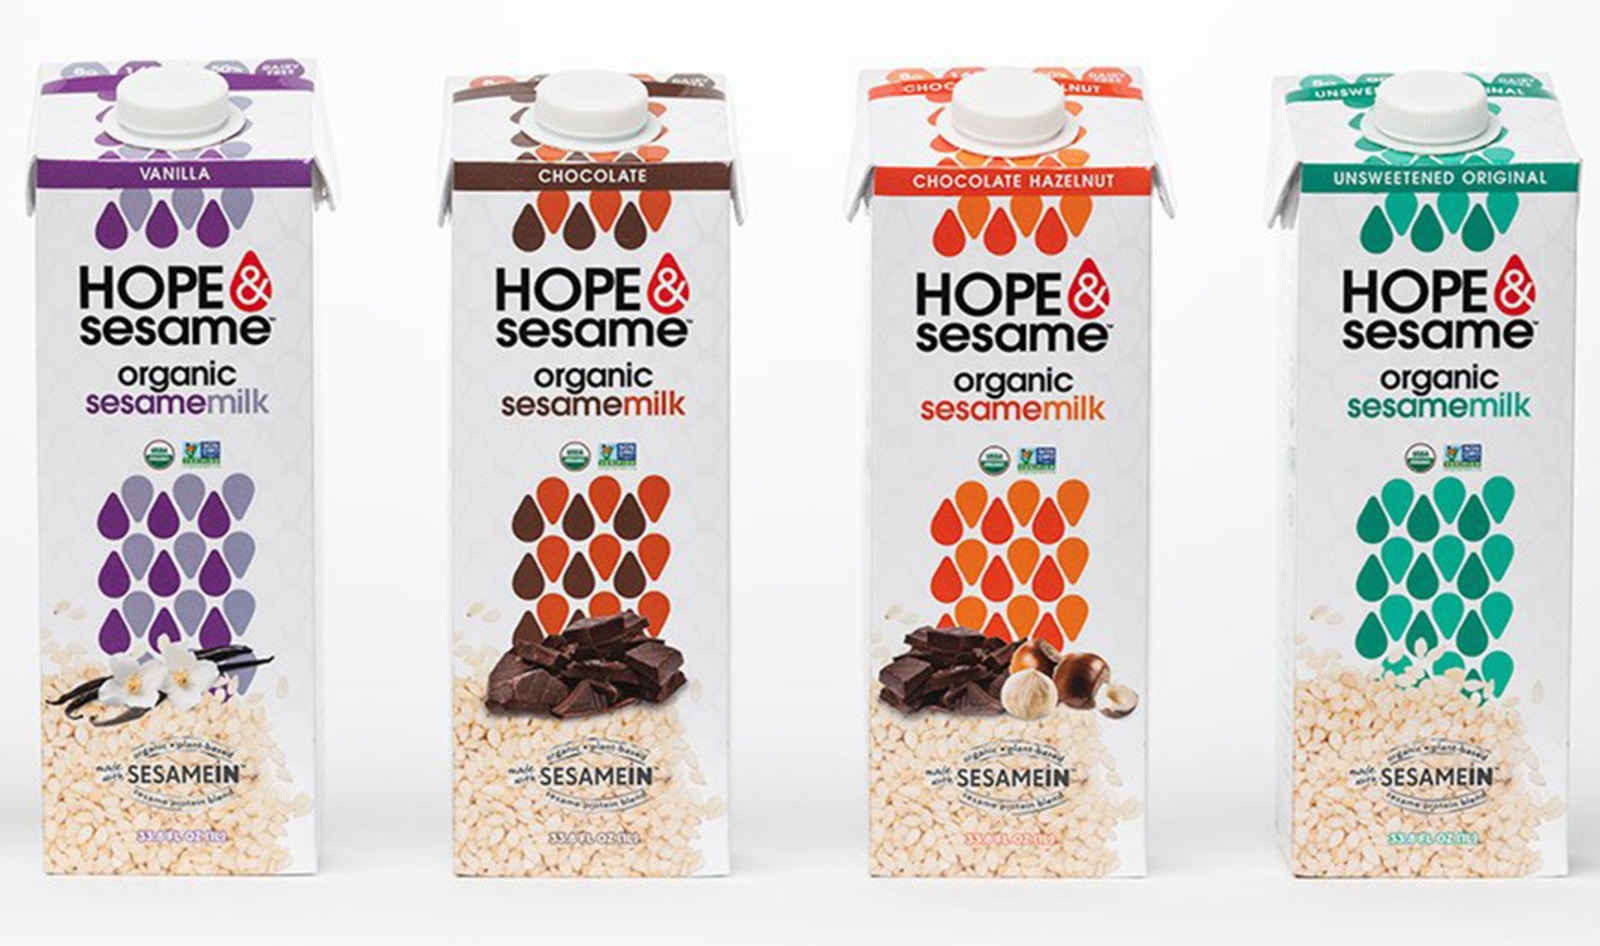 Vegan Sesame Milk Line to Launch on Amazon